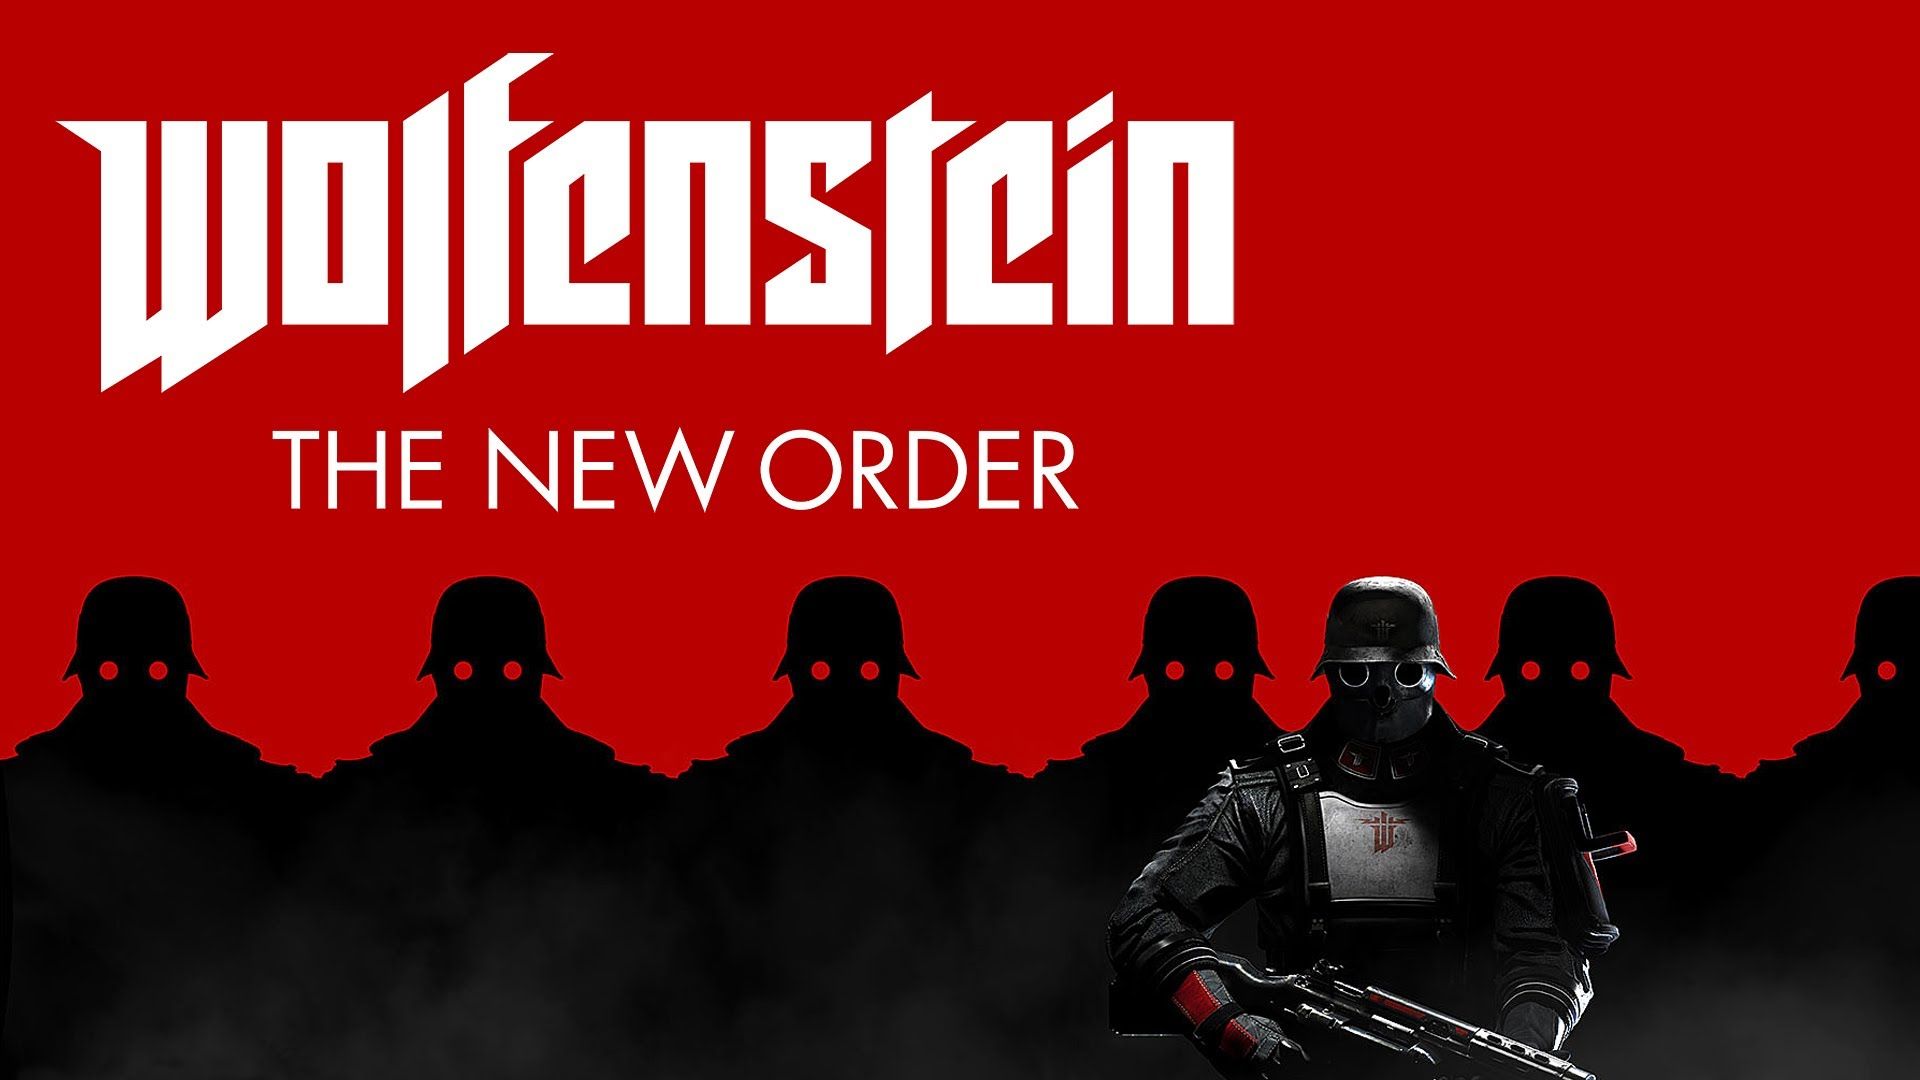 Wolfenstein the new order эскизы